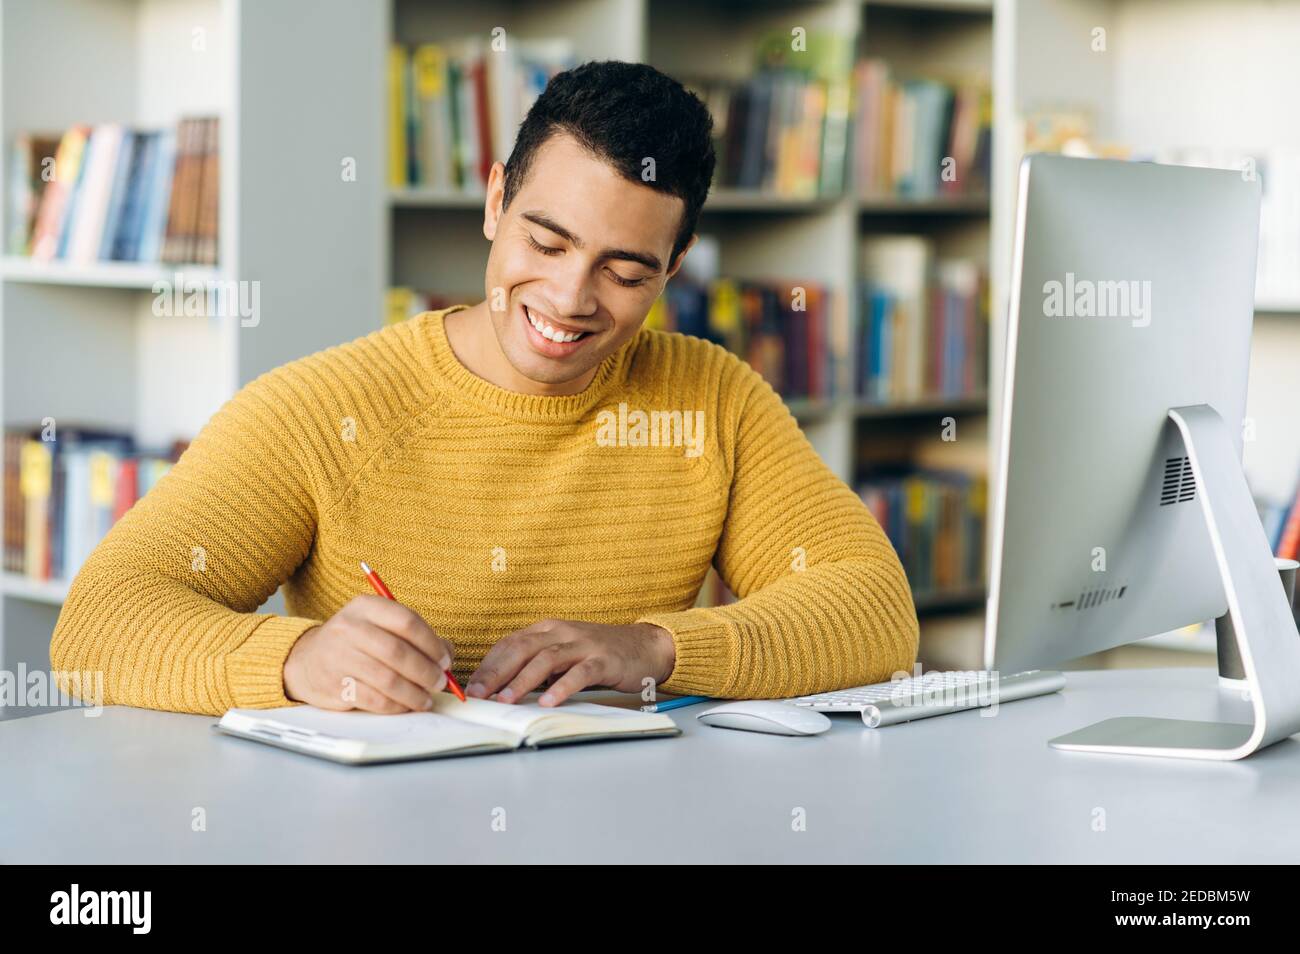 Aprendizaje en línea. Un joven hispano atractivo aprende en línea a través de una videollamada, toma nota de la información durante la lección mientras está sentado en el escritorio de trabajo Foto de stock